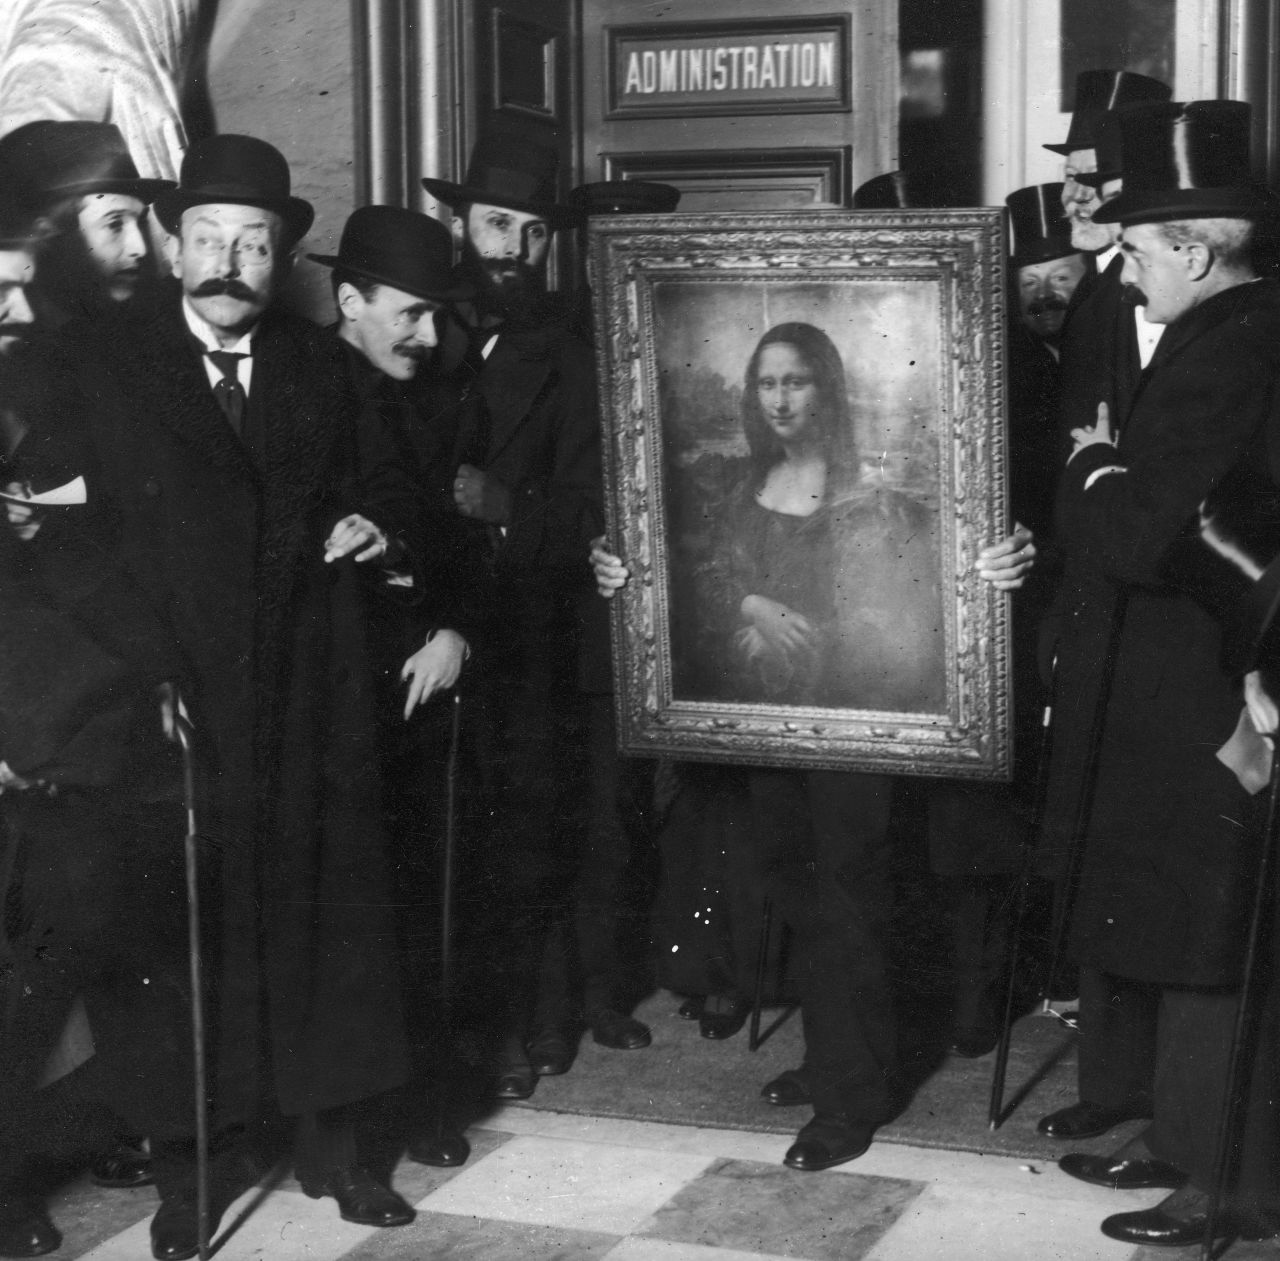 Oficiales rodean la Mona Lisa tras su regreso al Louvre en enero de 1914. ¿Por qué tanto alboroto? Había estado desaparecida durante dos años.